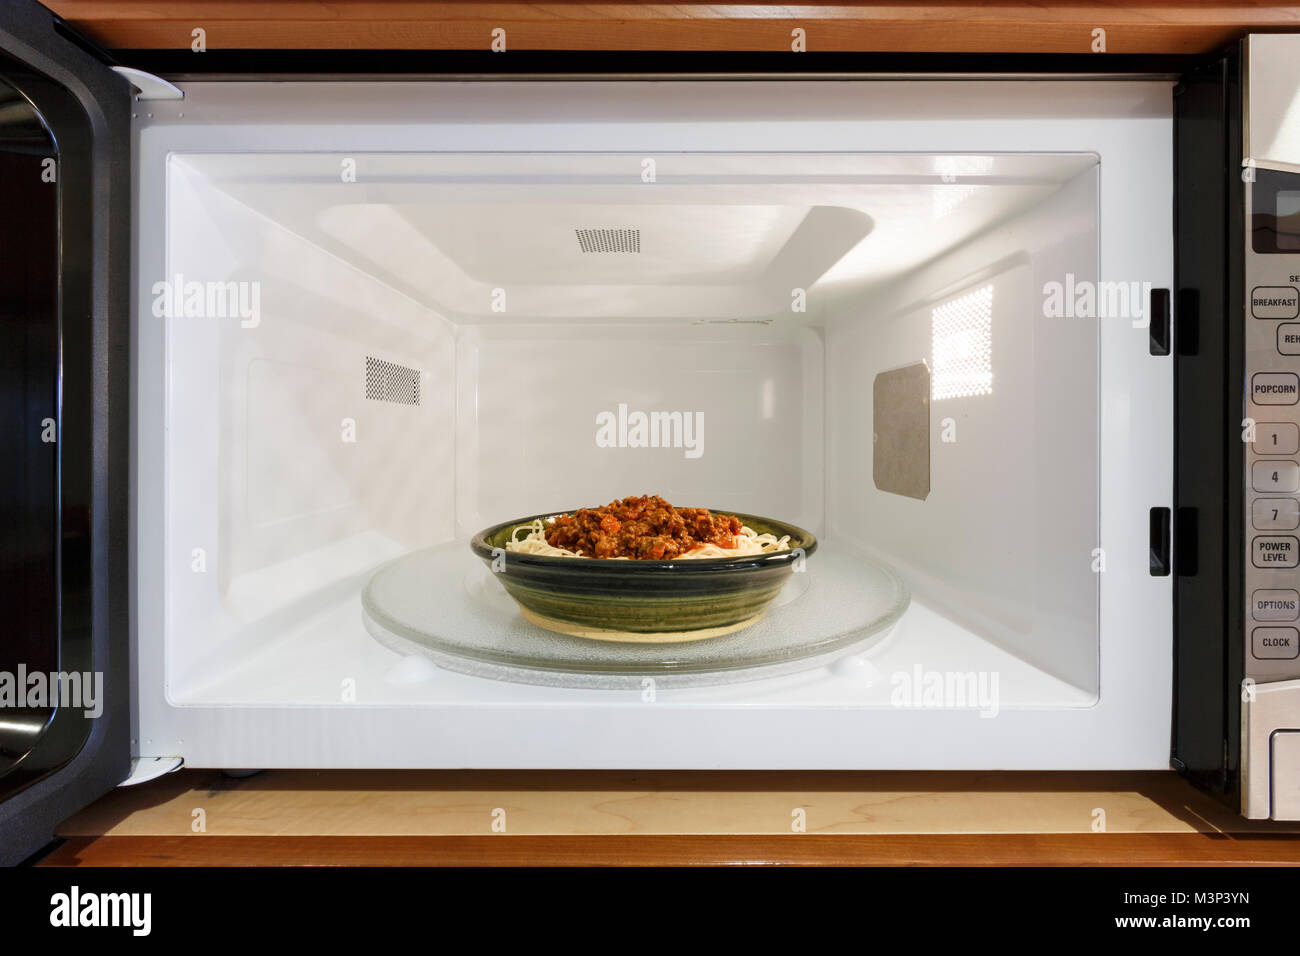 Küche Haushaltsgeräte kochen Nacherwärmung Teller Schüssel Schüssel Mahlzeit Abendessen mit gekochten spaghetti Nudeln mit Bolognese Tomate Soße in Mikrowelle Stockfoto